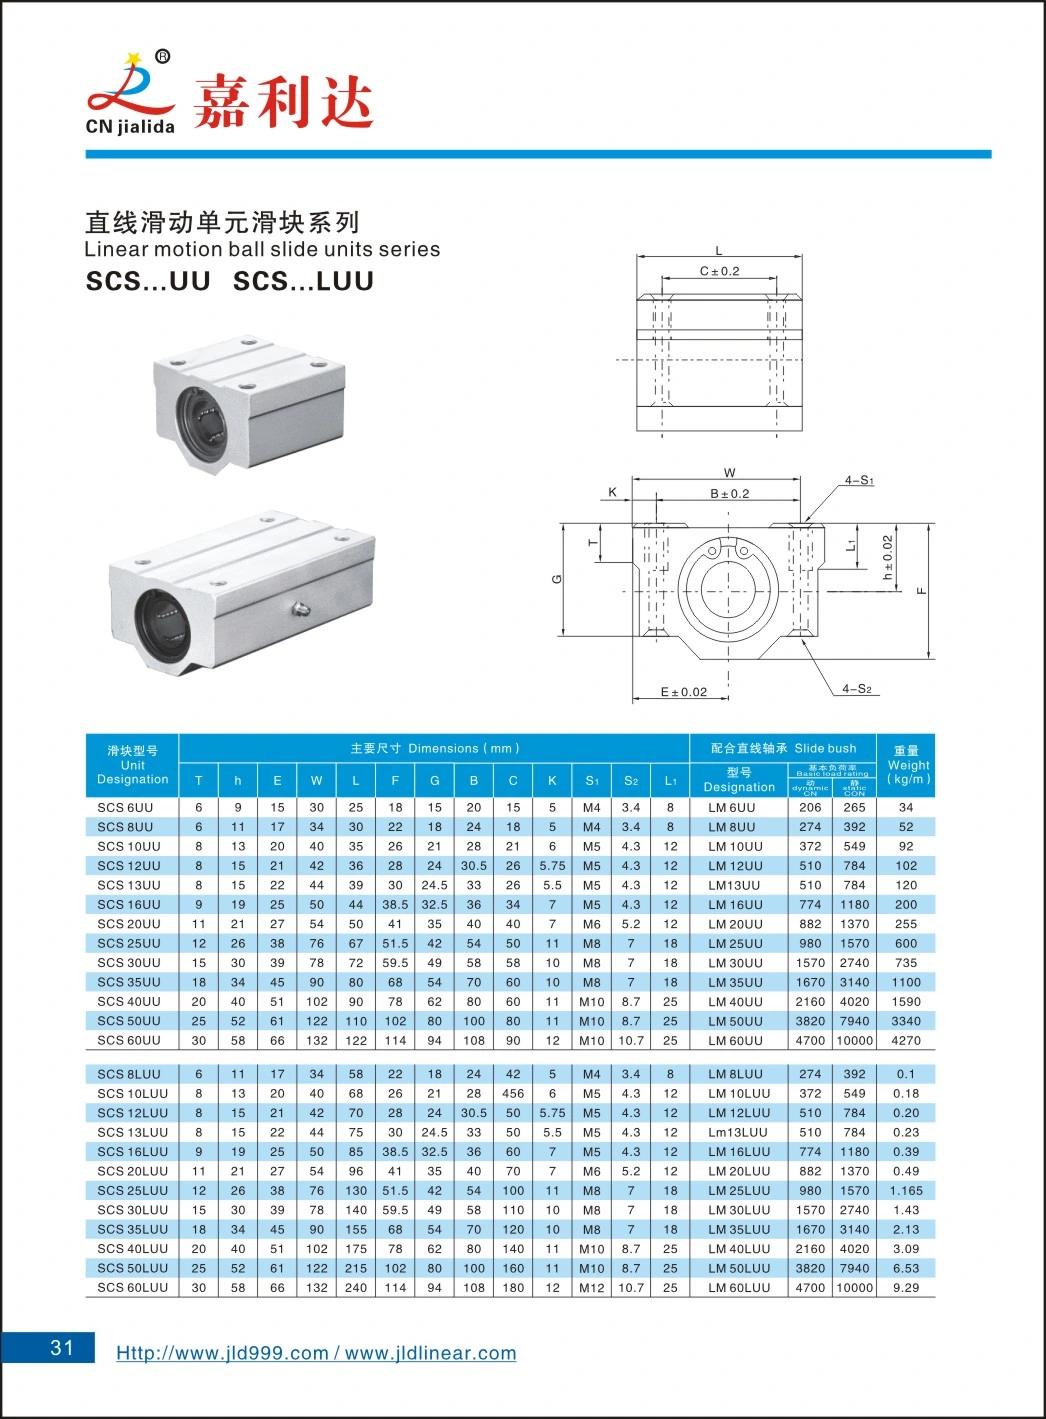 Professional Manufacturer SBR TBR Scs Shf Sk Linear Ball Bearing Block Slide Units